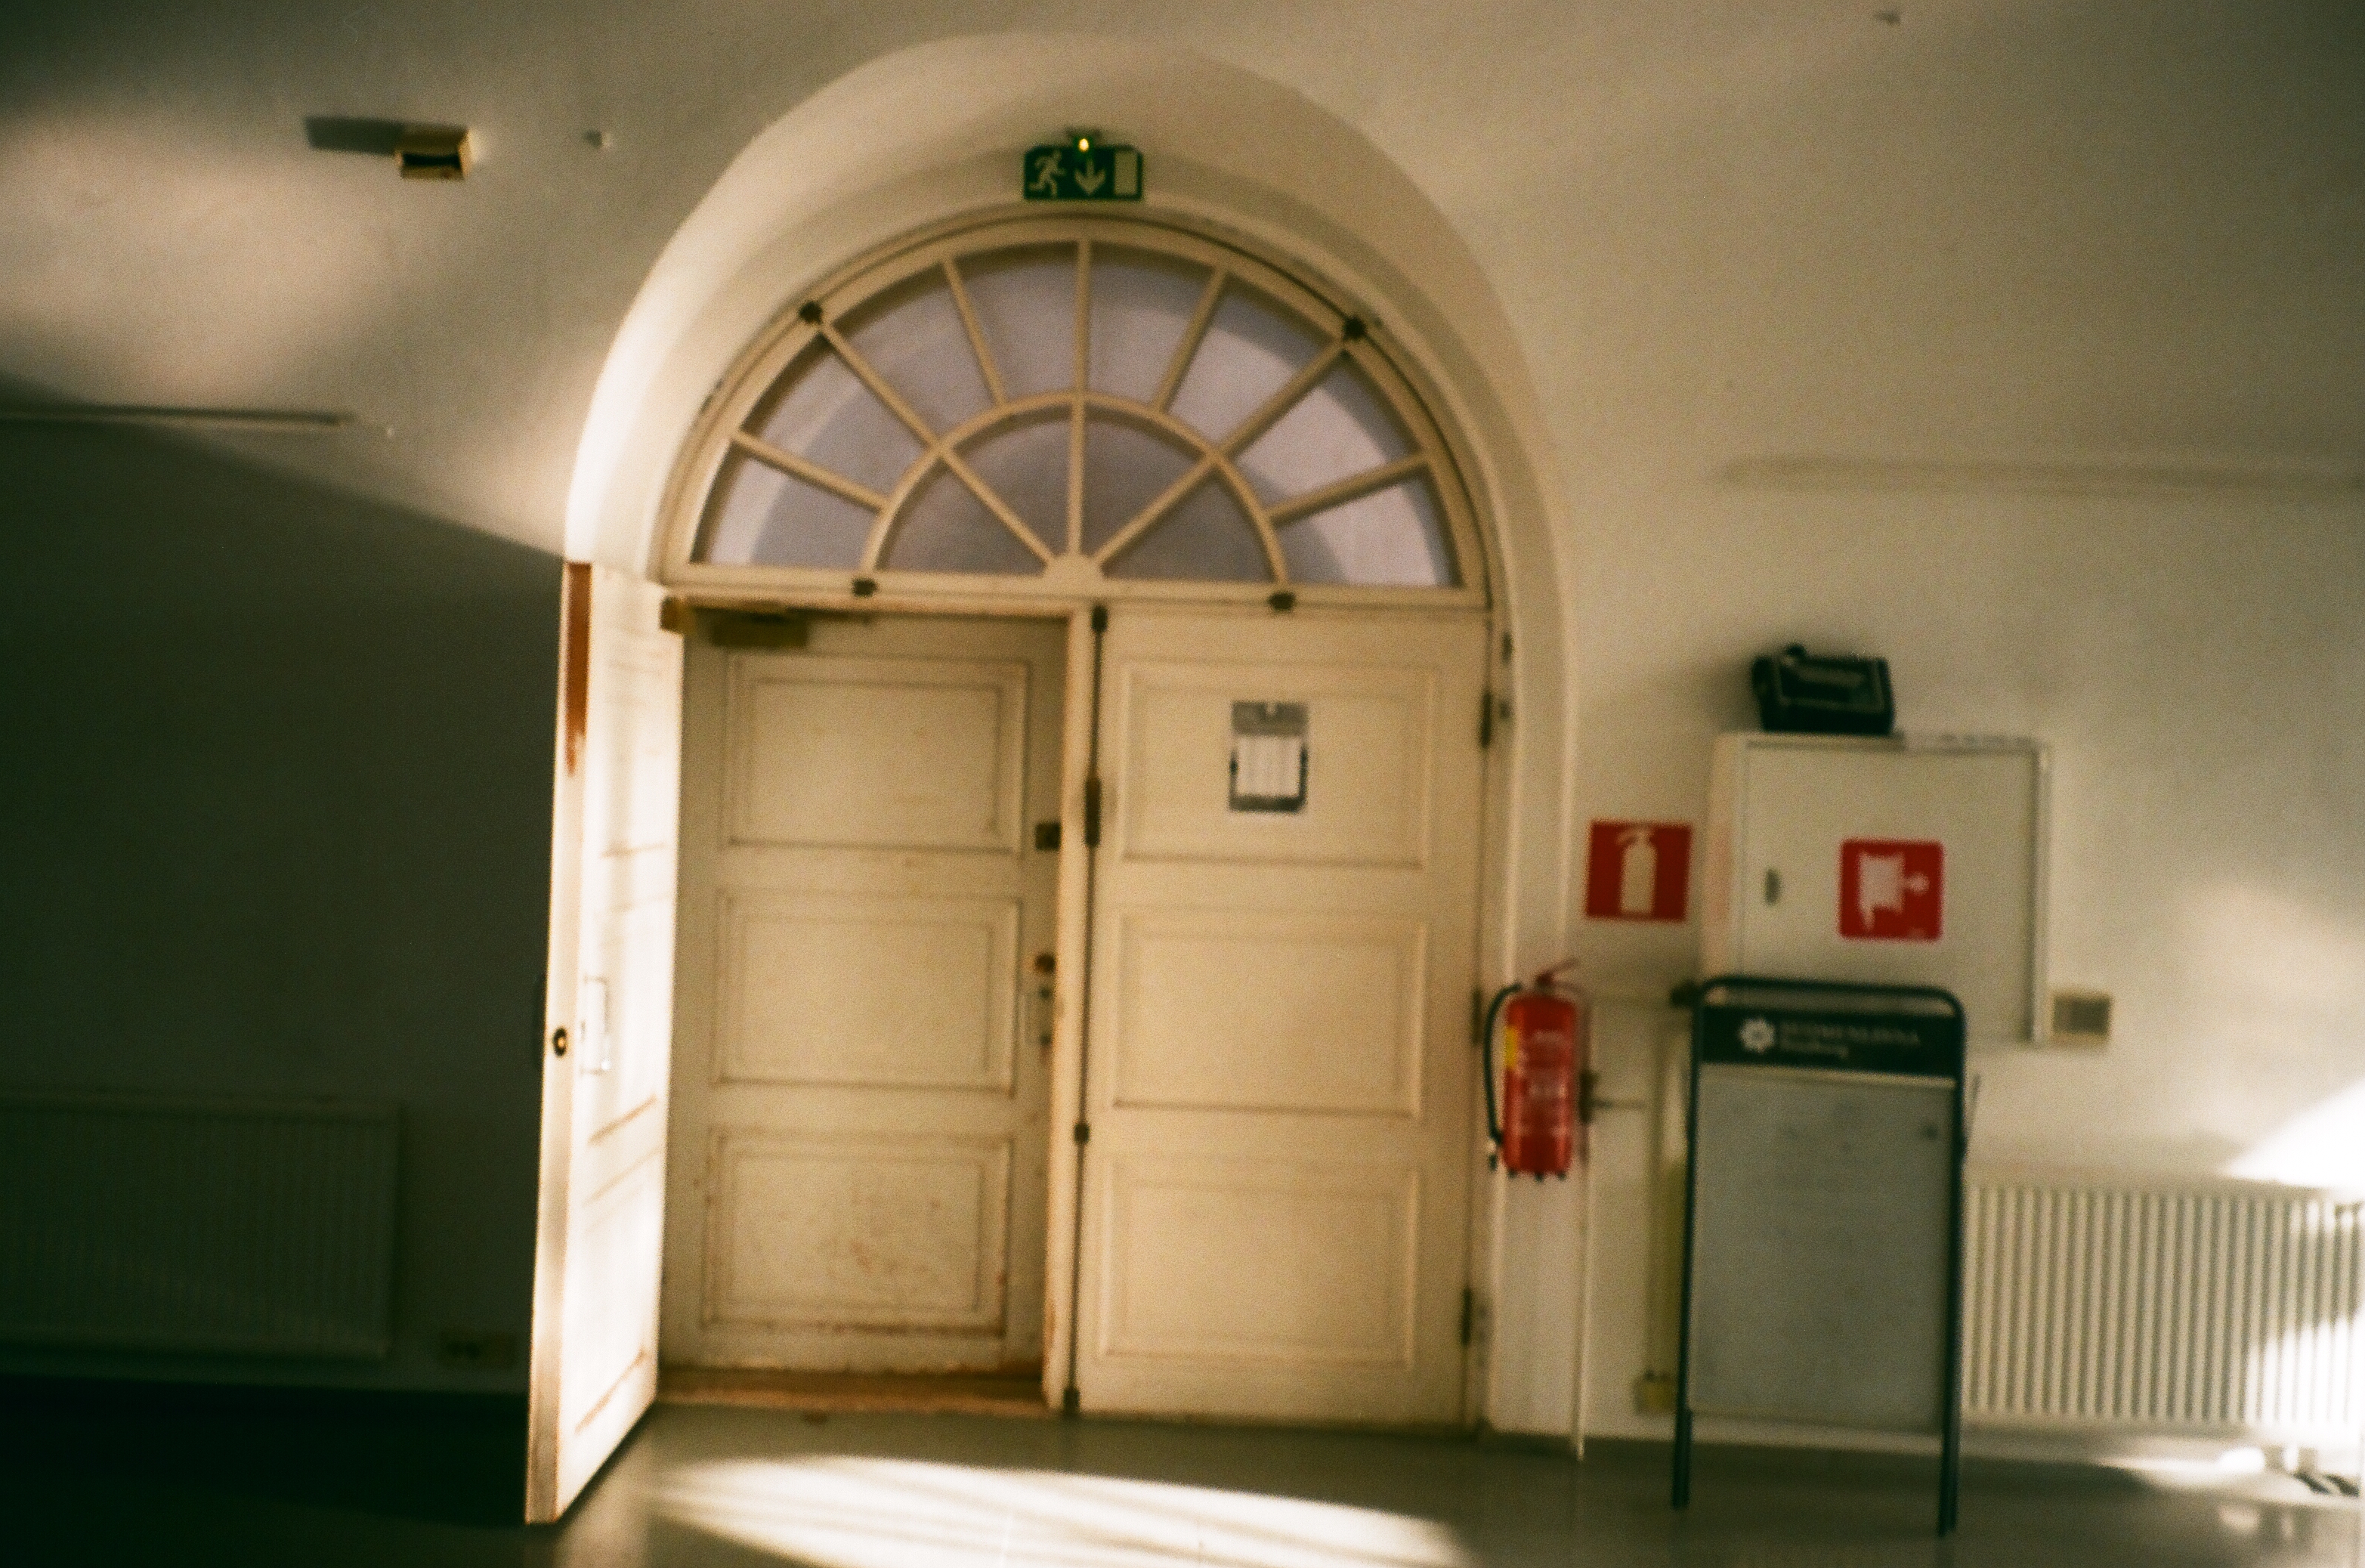 doorway